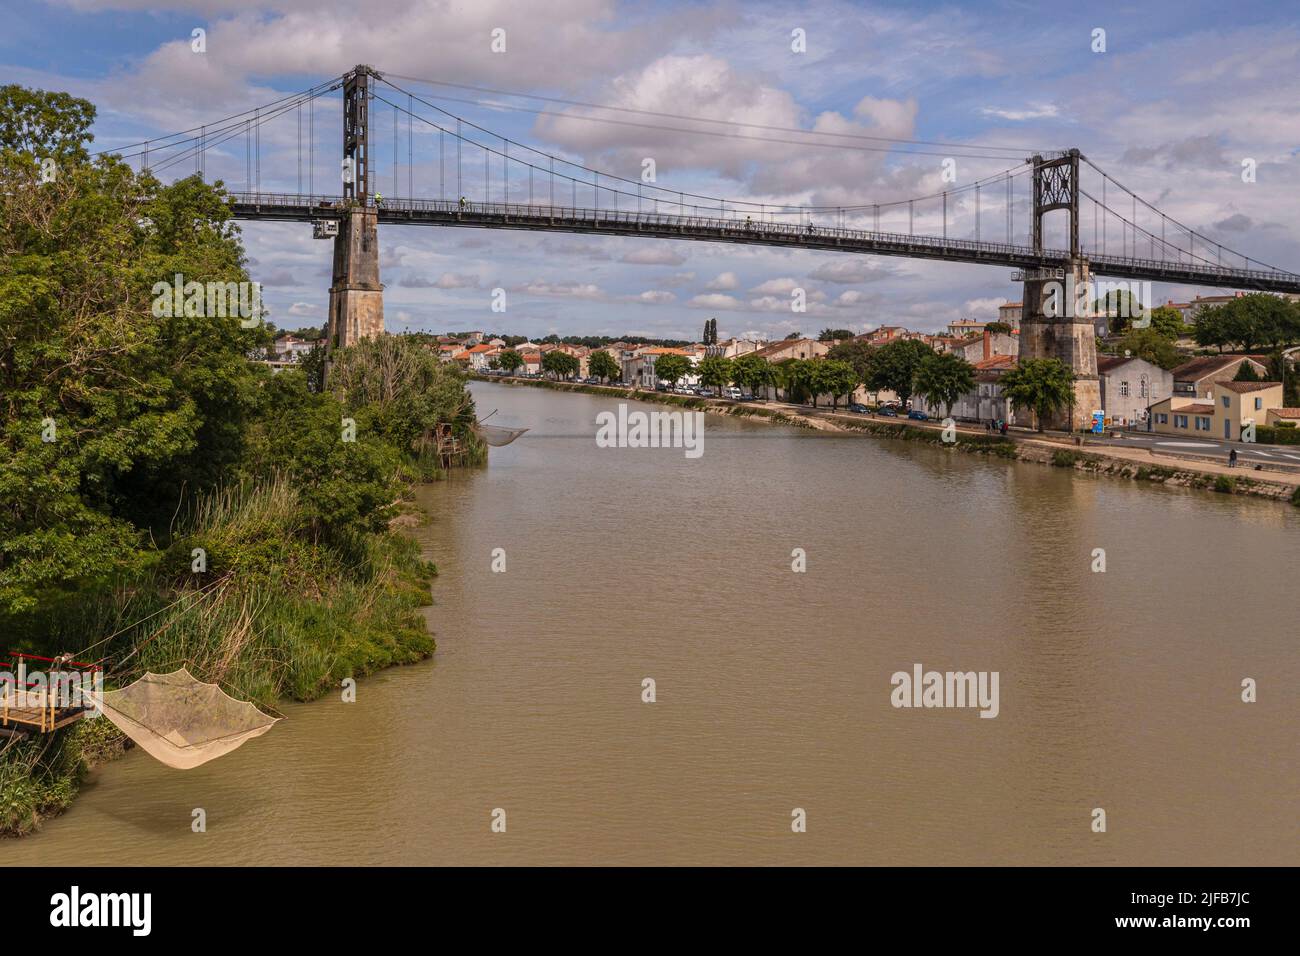 Francia, Charente-Maritime, Saintonge, Tonnay Charente, el puente colgante construido en 1842 sobre el río Charente (vista aérea) Foto de stock